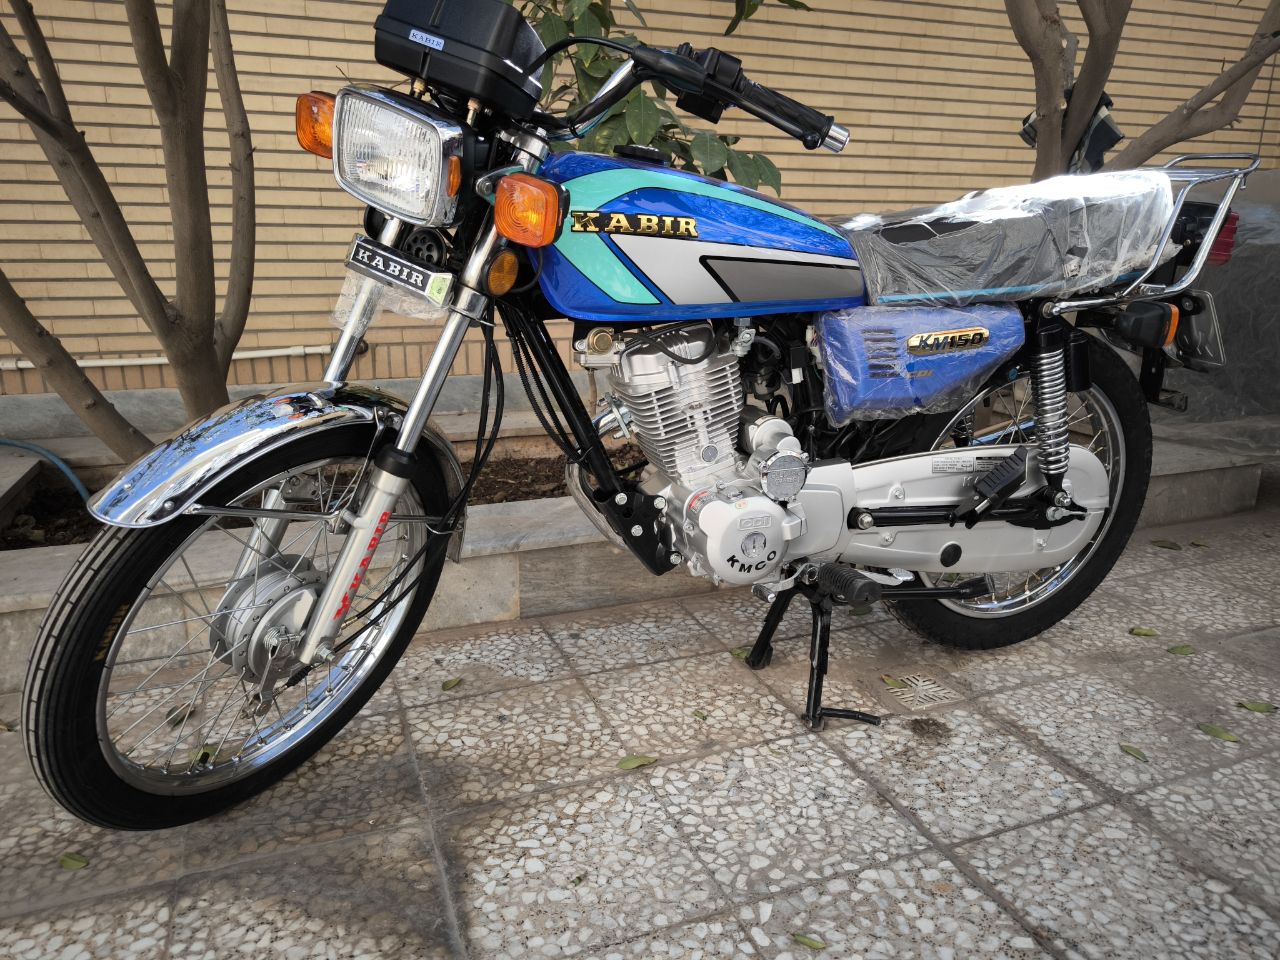 موتورسیکلت KABIR کبیر ۱۵۰ سی سی مدل ۹۵ کاربراتوری خشک